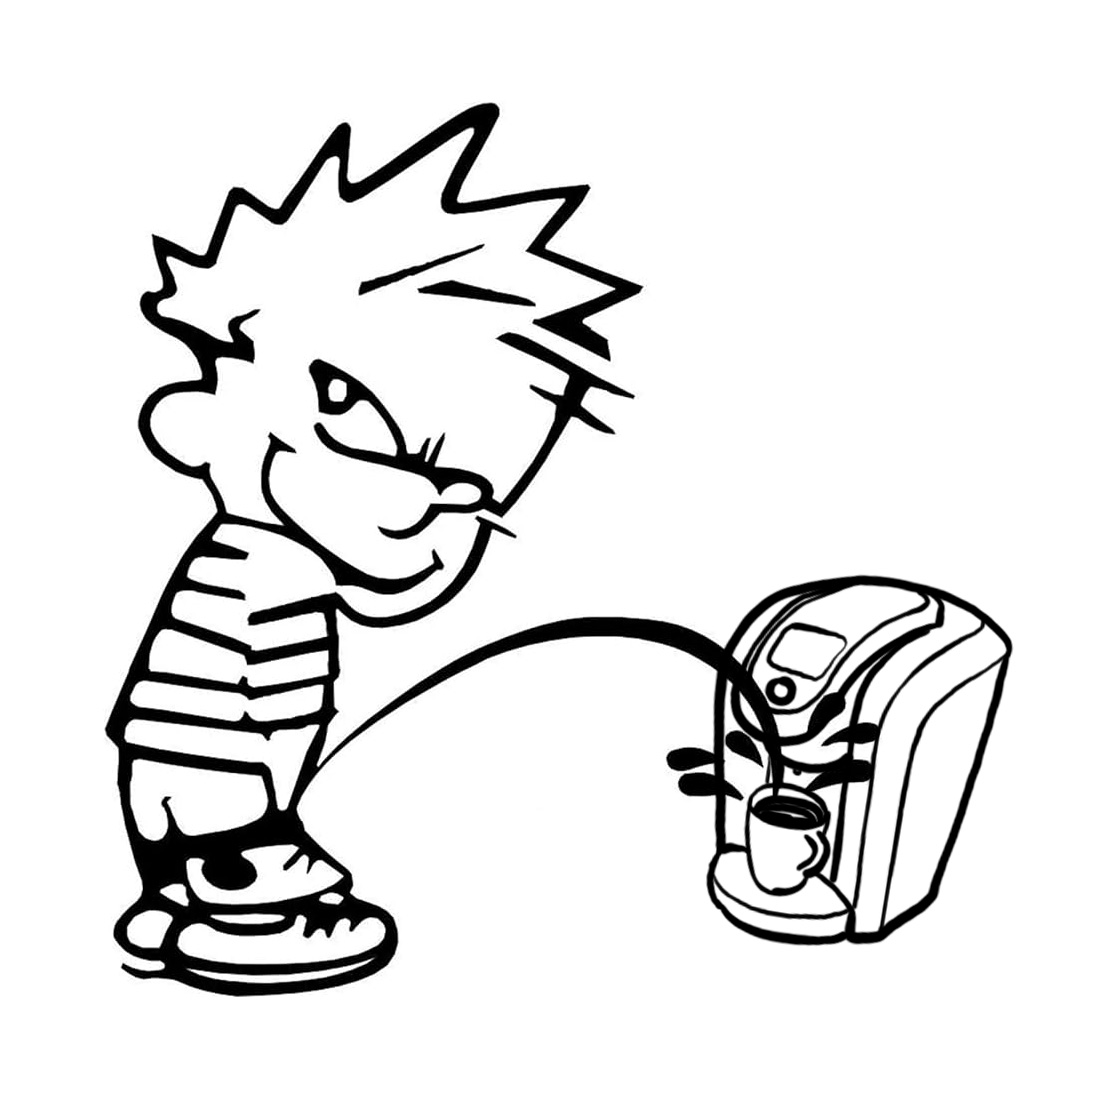 Calvin peeing on a Keurig machine